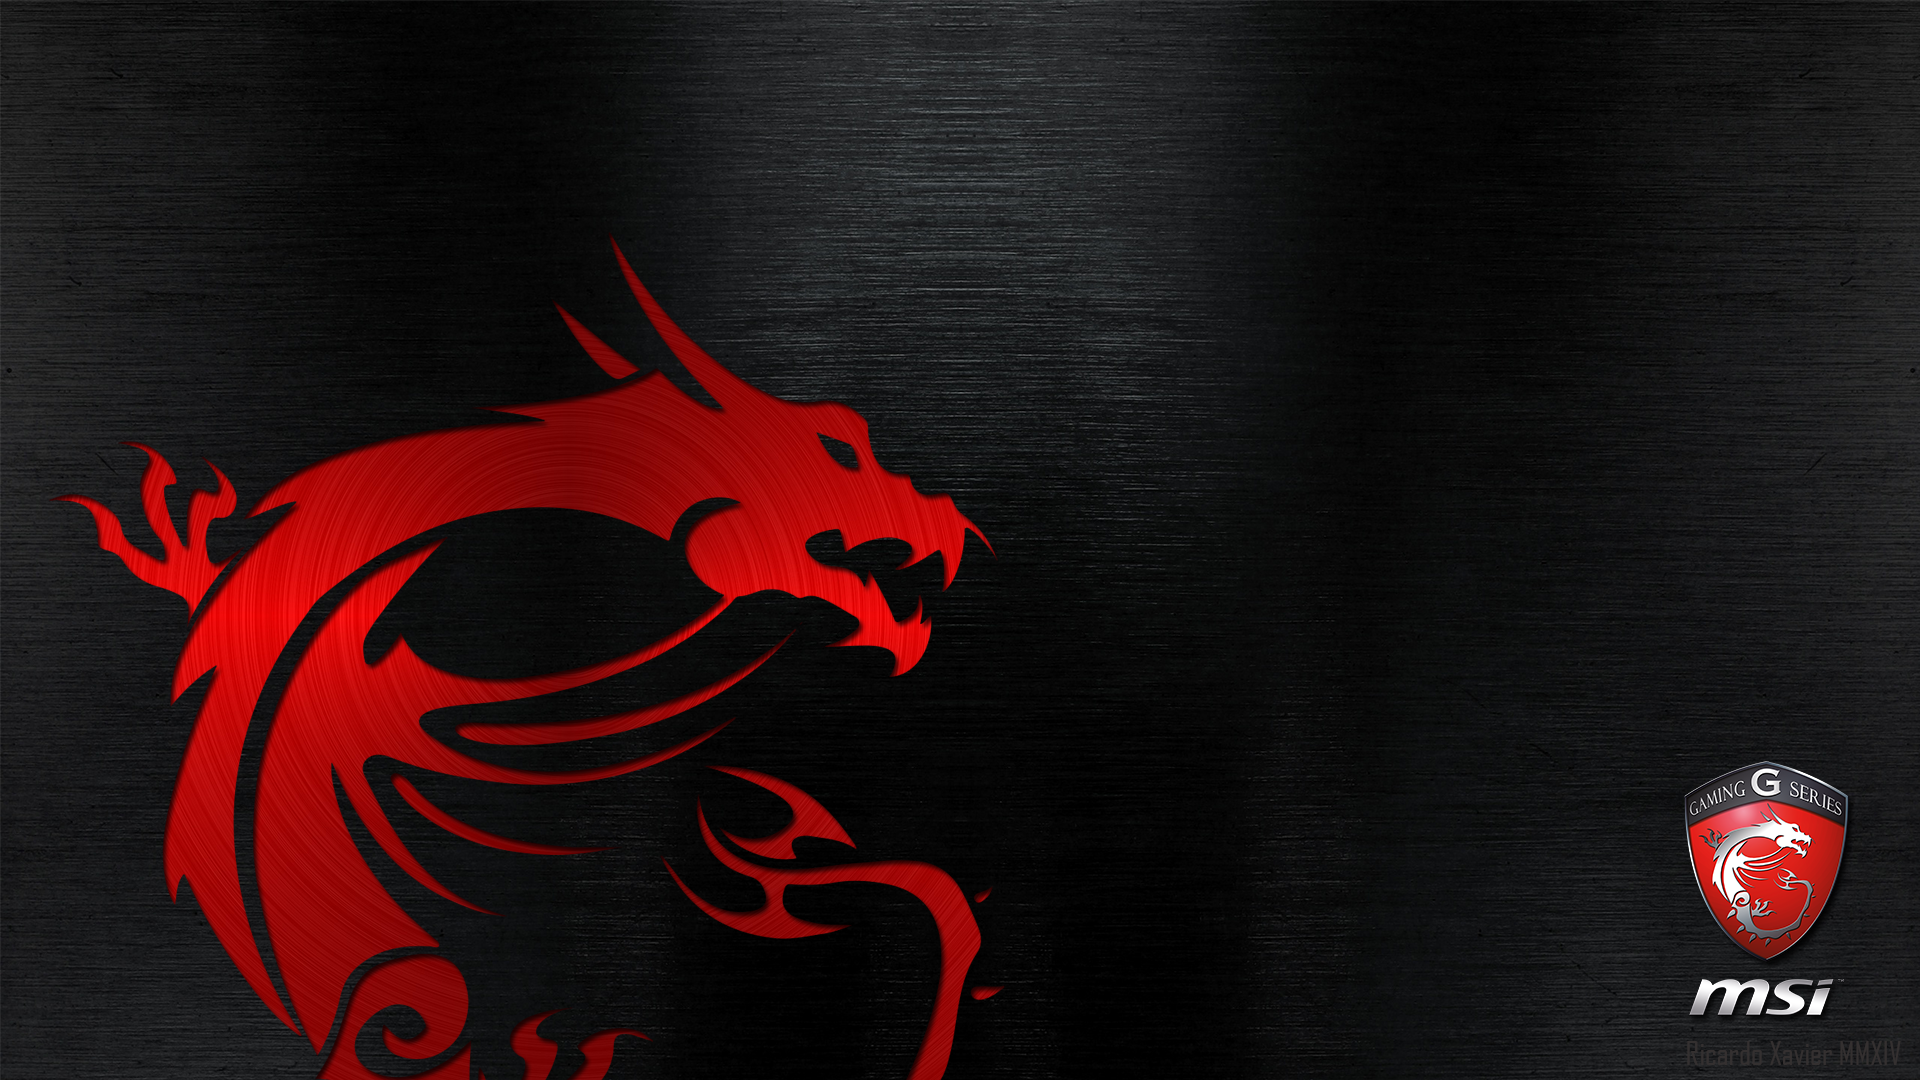 Msi Gaming Wallpaper Red Dragon Emobossed